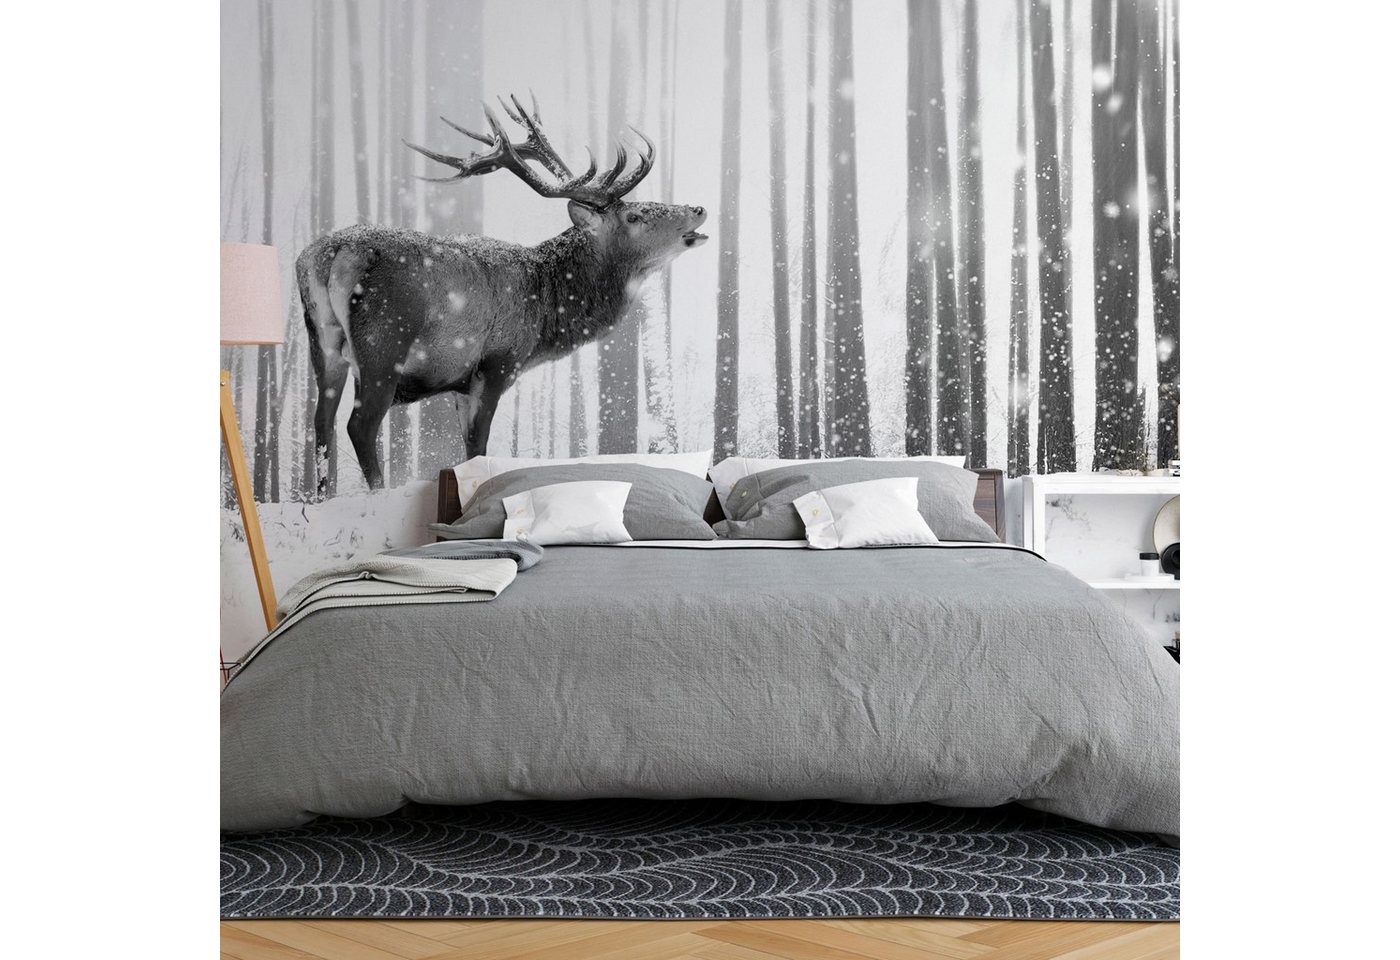 KUNSTLOFT Vliestapete Deer in the Snow (Black and White) 1x0.7 m, halb-matt, lichtbeständige Design Tapete von KUNSTLOFT